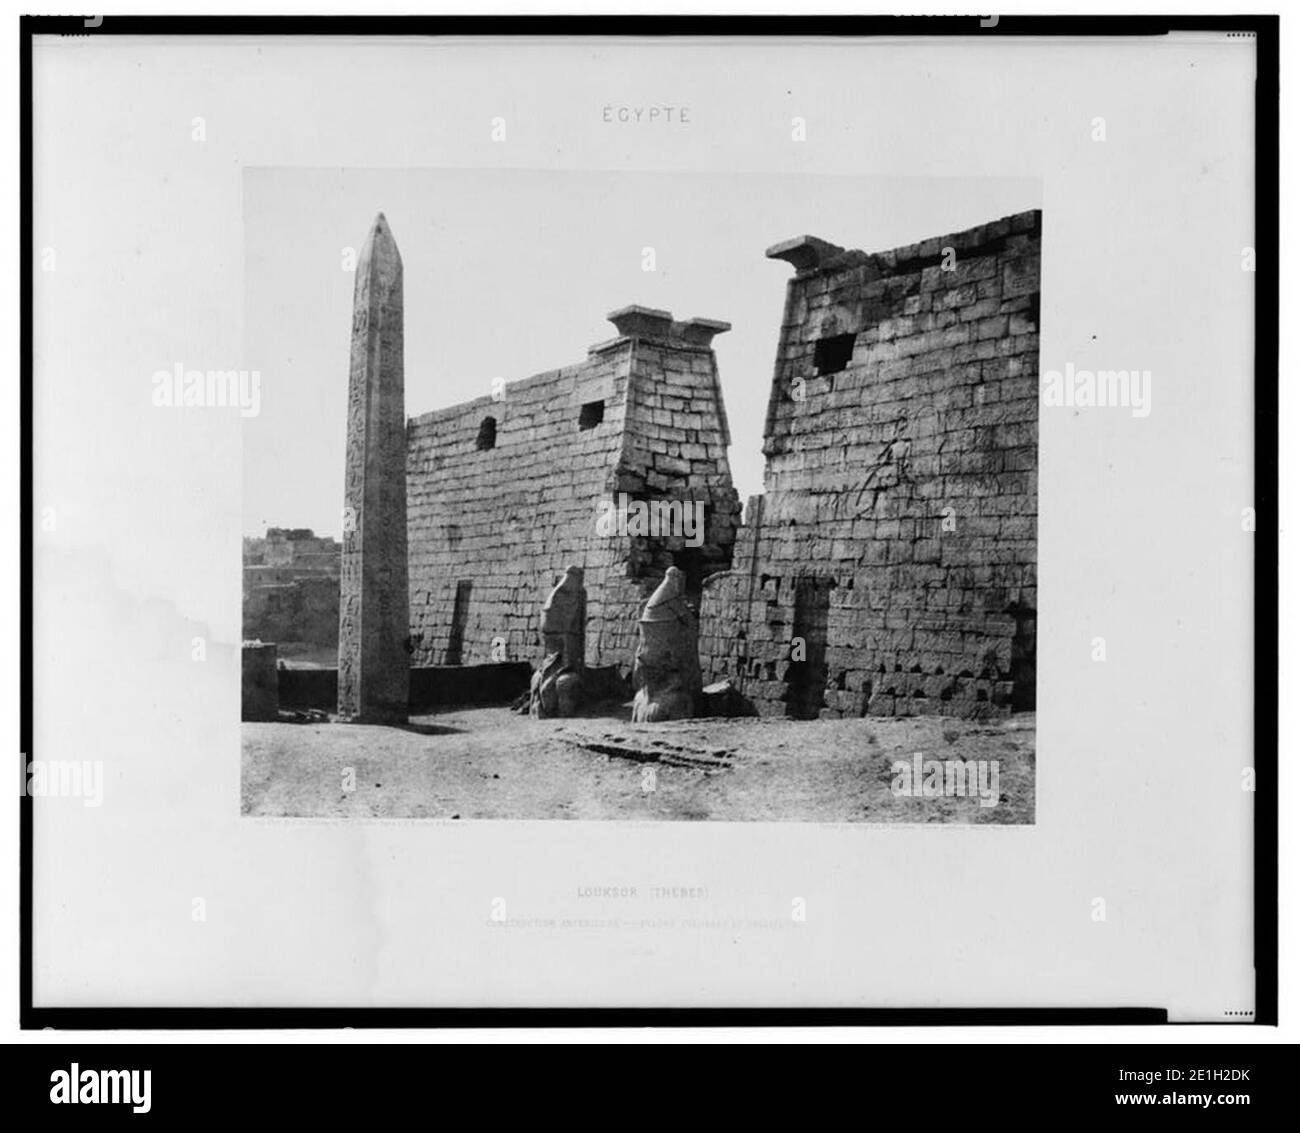 Louksor (Thèbes) - construction antérieure - pylône, colosses et obélisque - Félix Teynard. Stock Photo